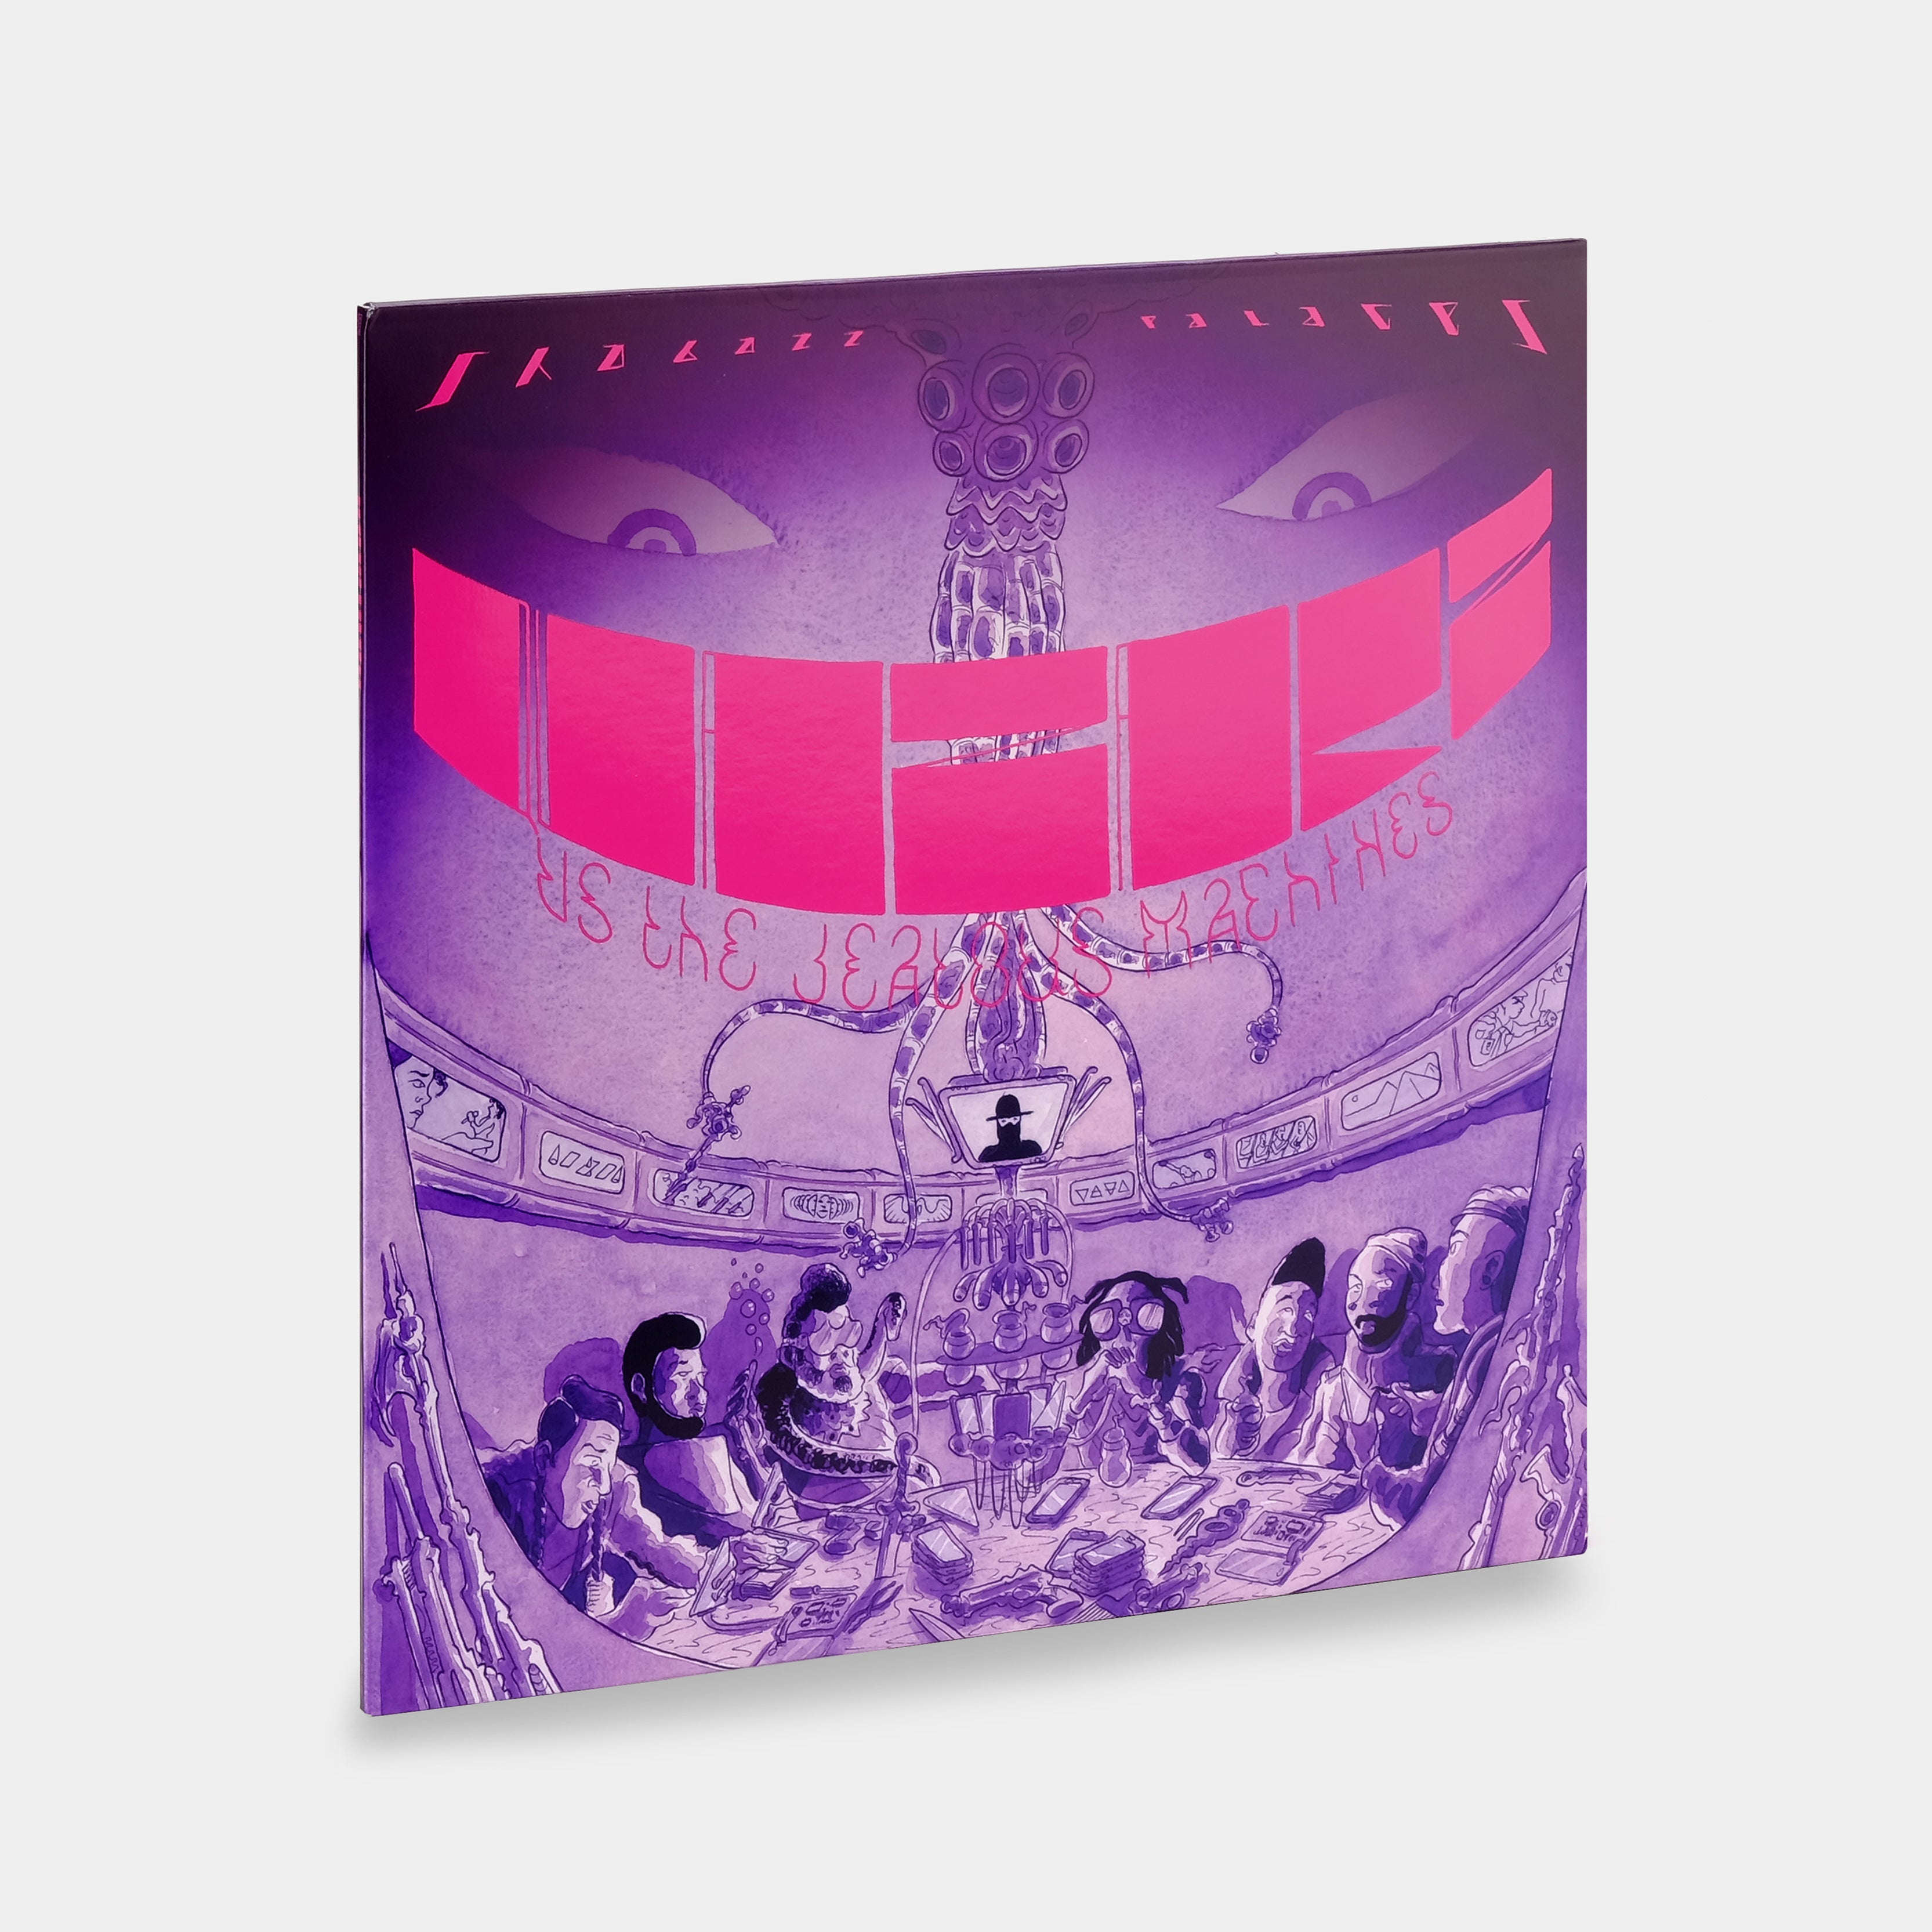 Shabazz Palaces - Quazarz vs. The Jealous Machines LP Pink Swirl Vinyl Record